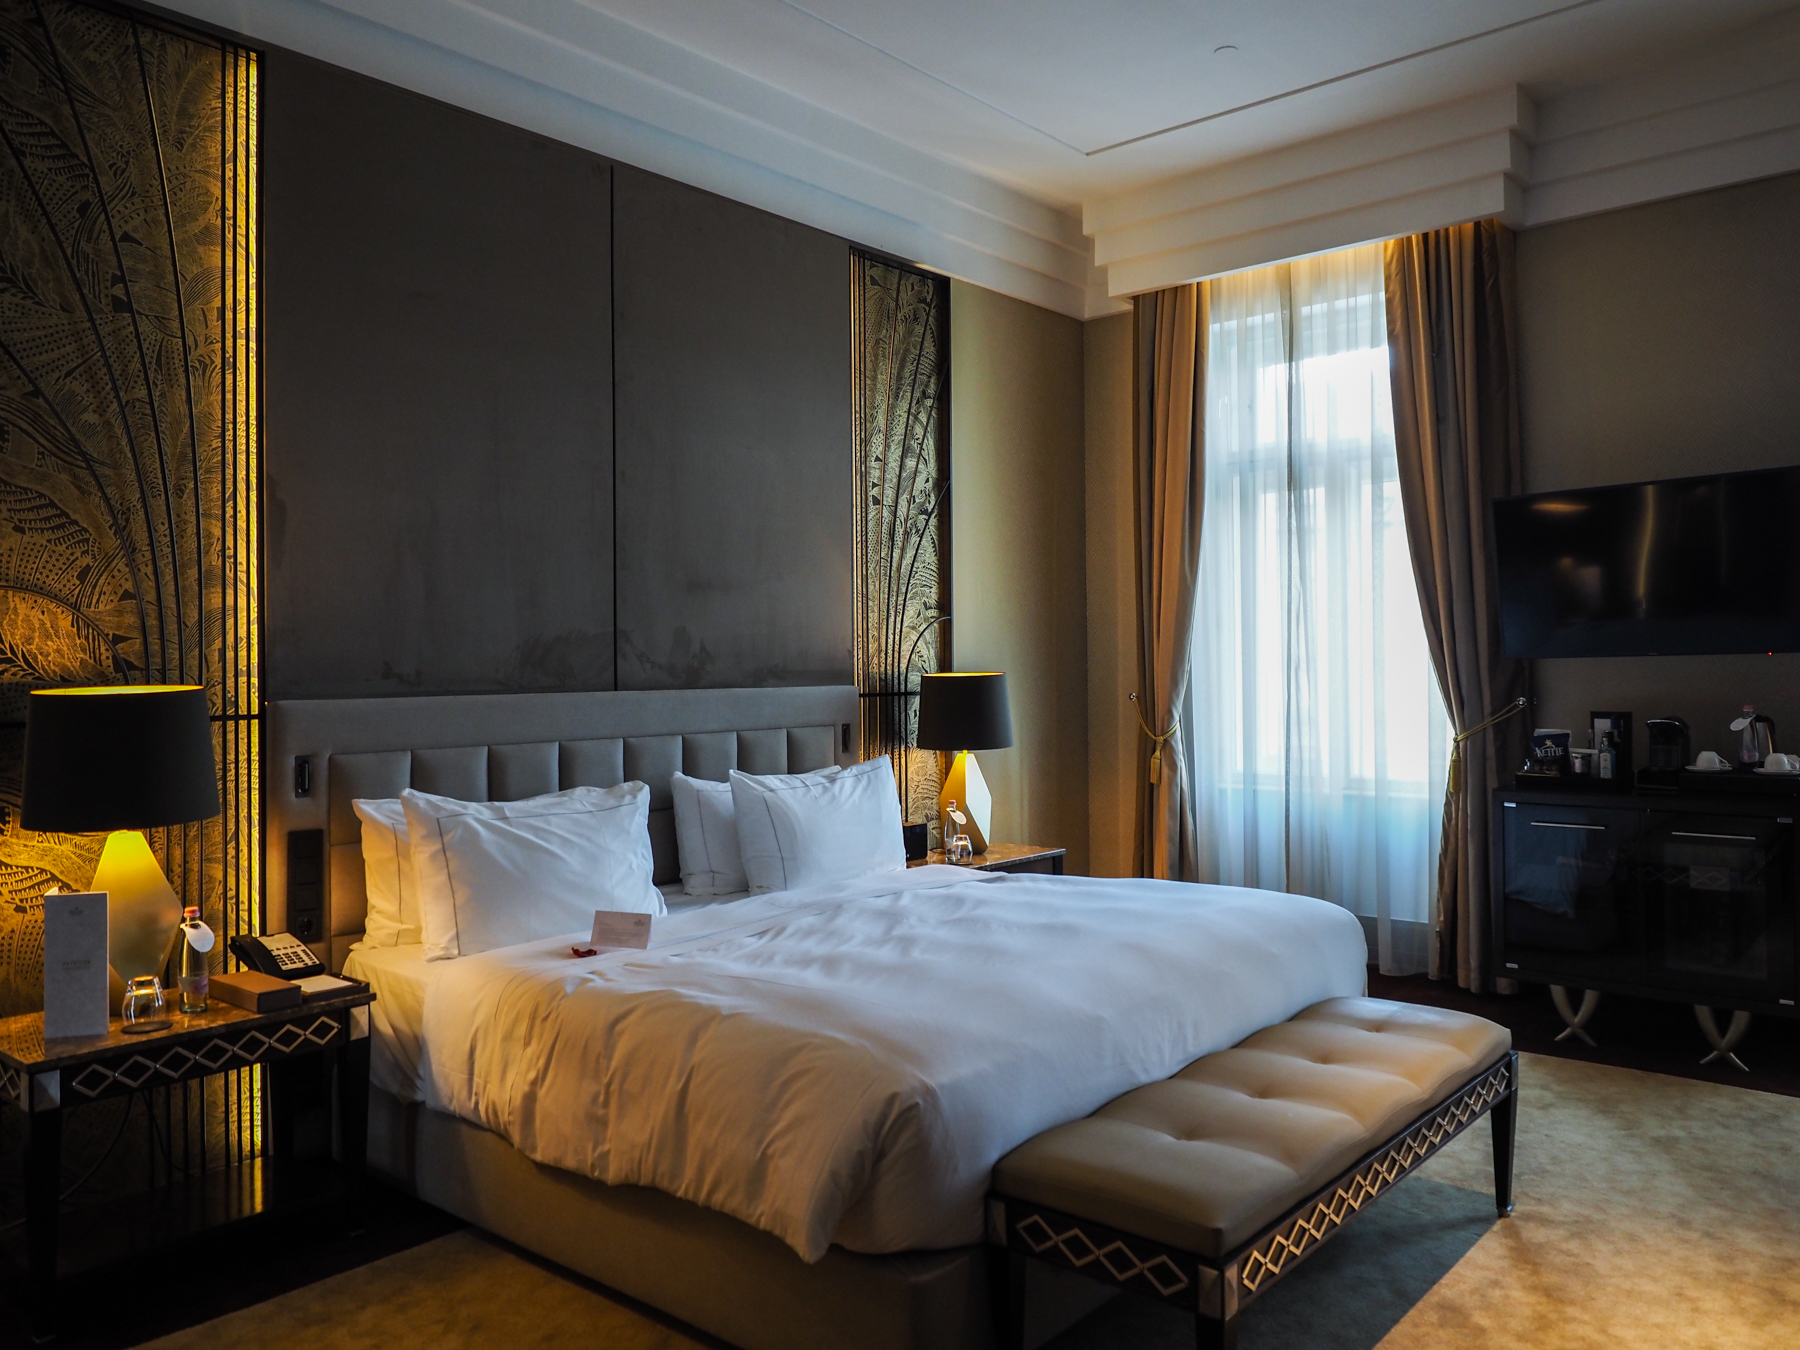 Luxus élmény történelmi falak között - eltöltöttünk egy estét az Anantara New York Palace Budapest Hotelben